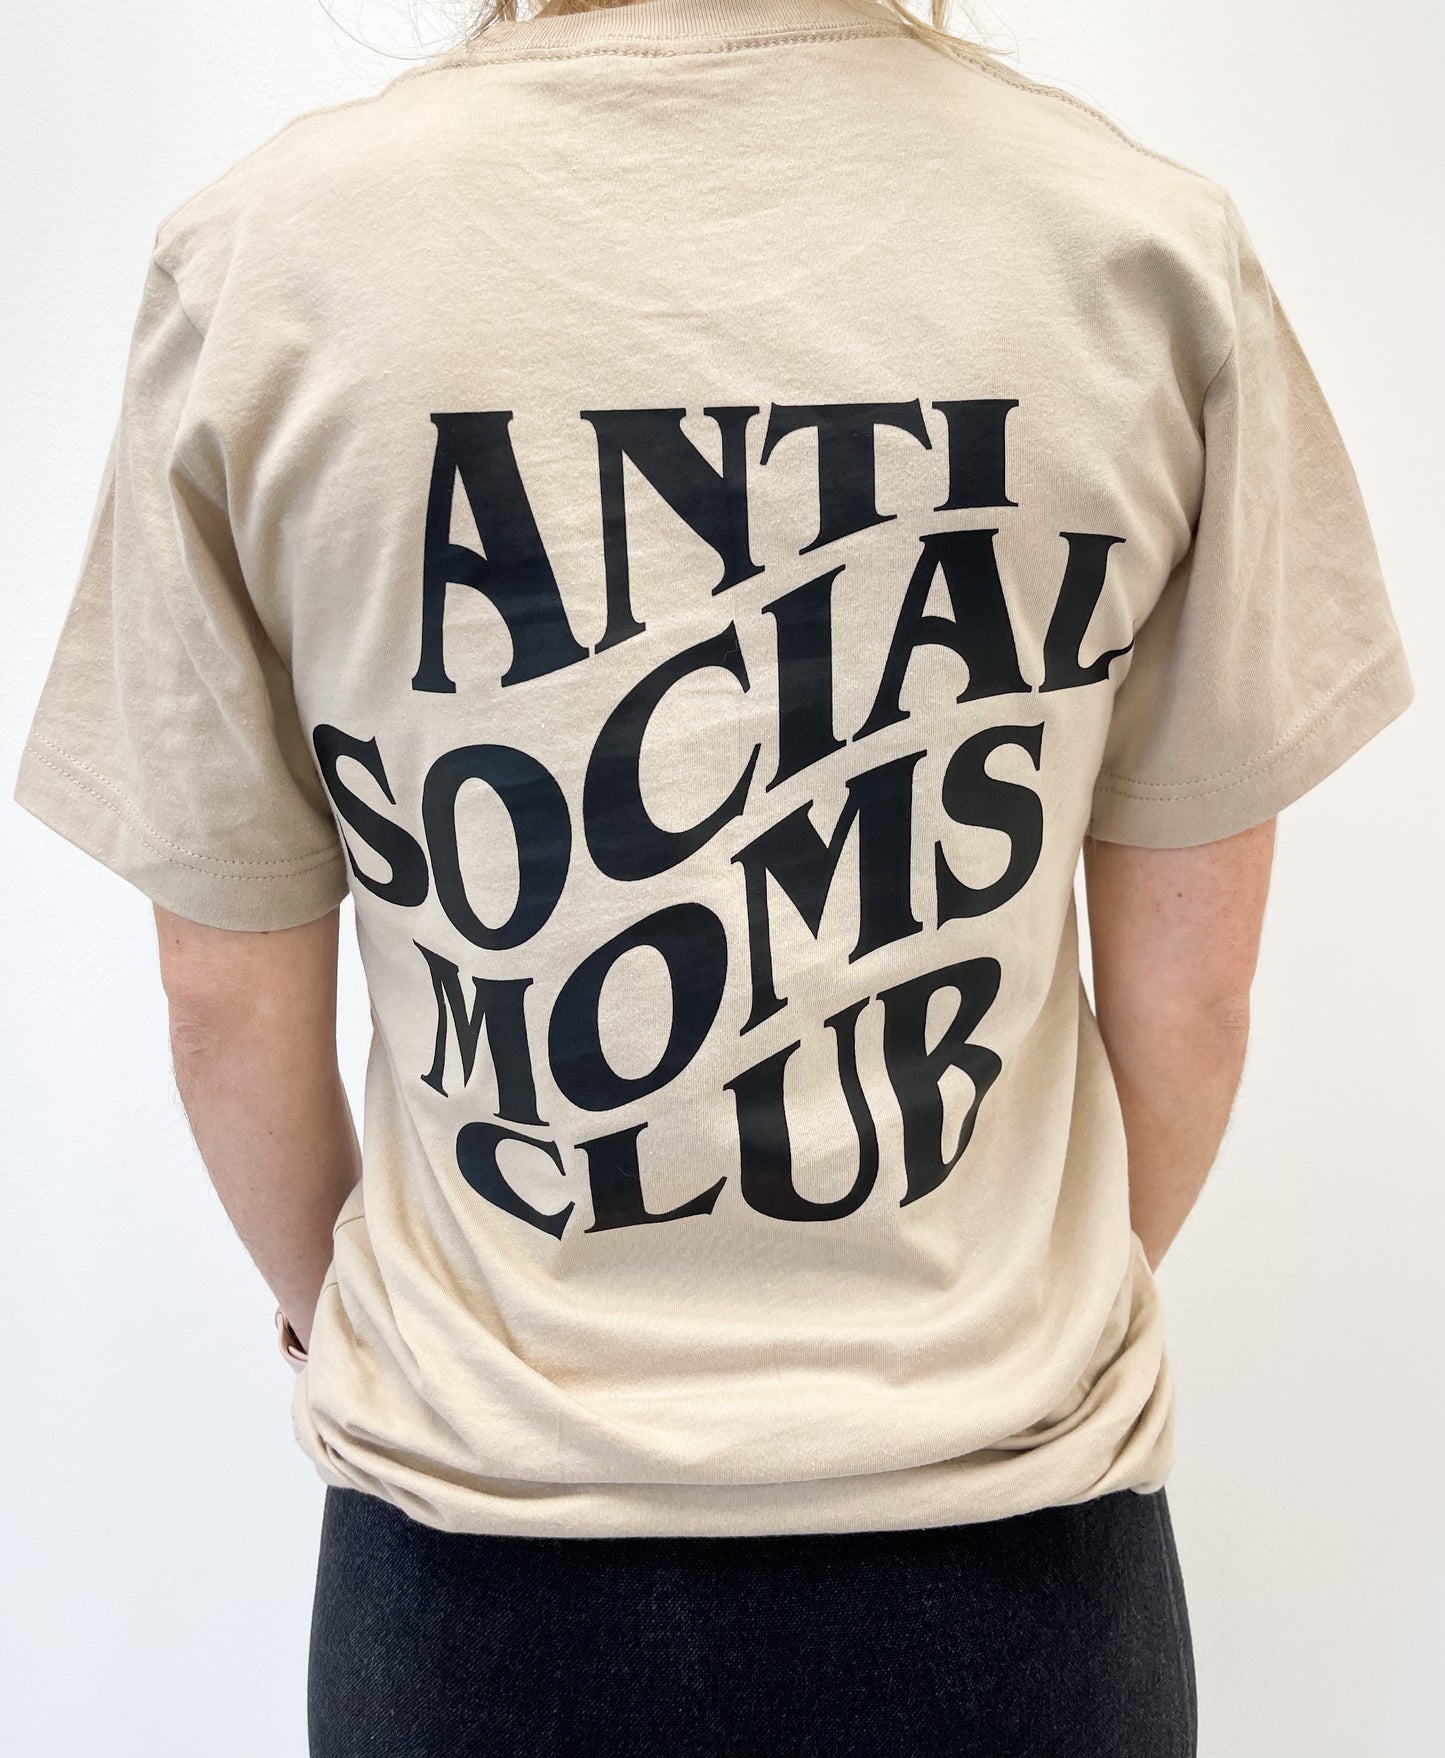 Anti Social Moms Club